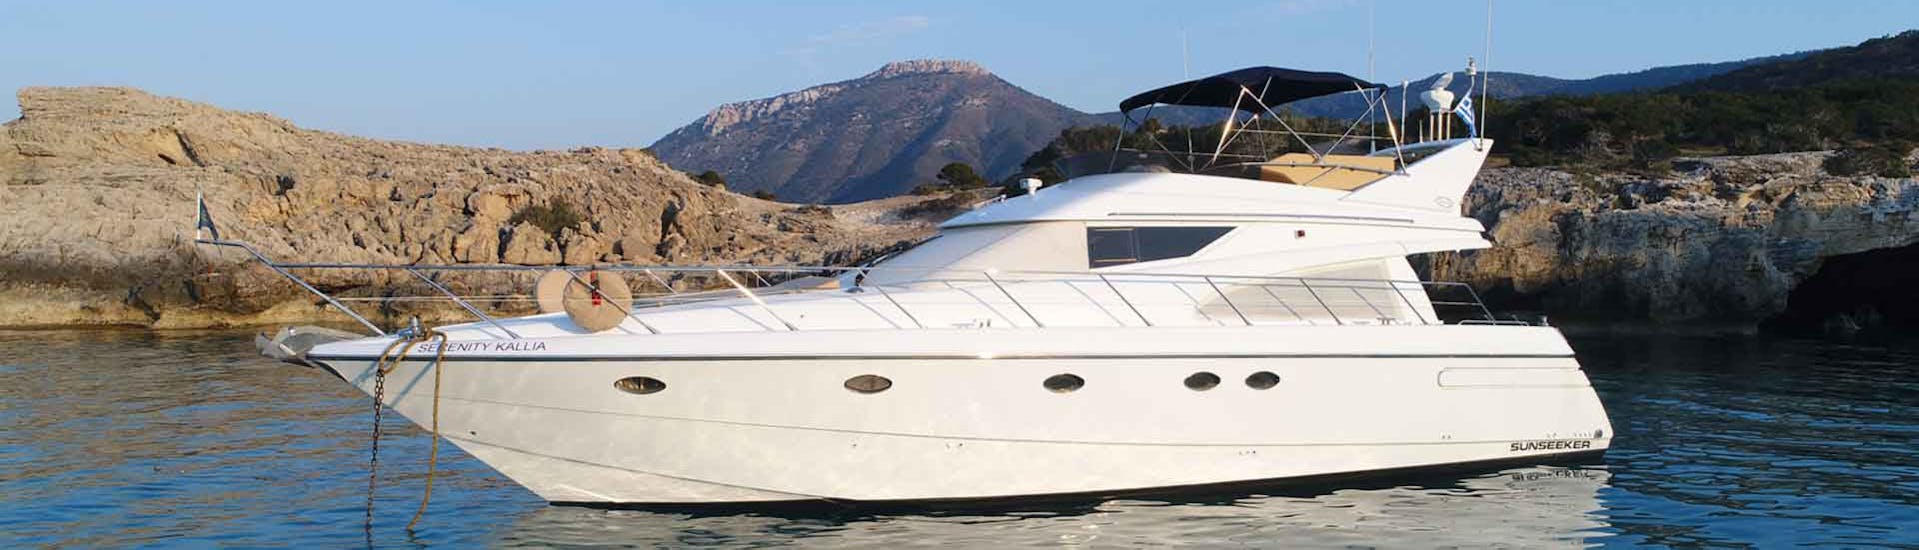 Serenity Kallia sur la mer pendant la Balade privée en bateau de luxe autour de la côte des Akamas au départ de Latchi.